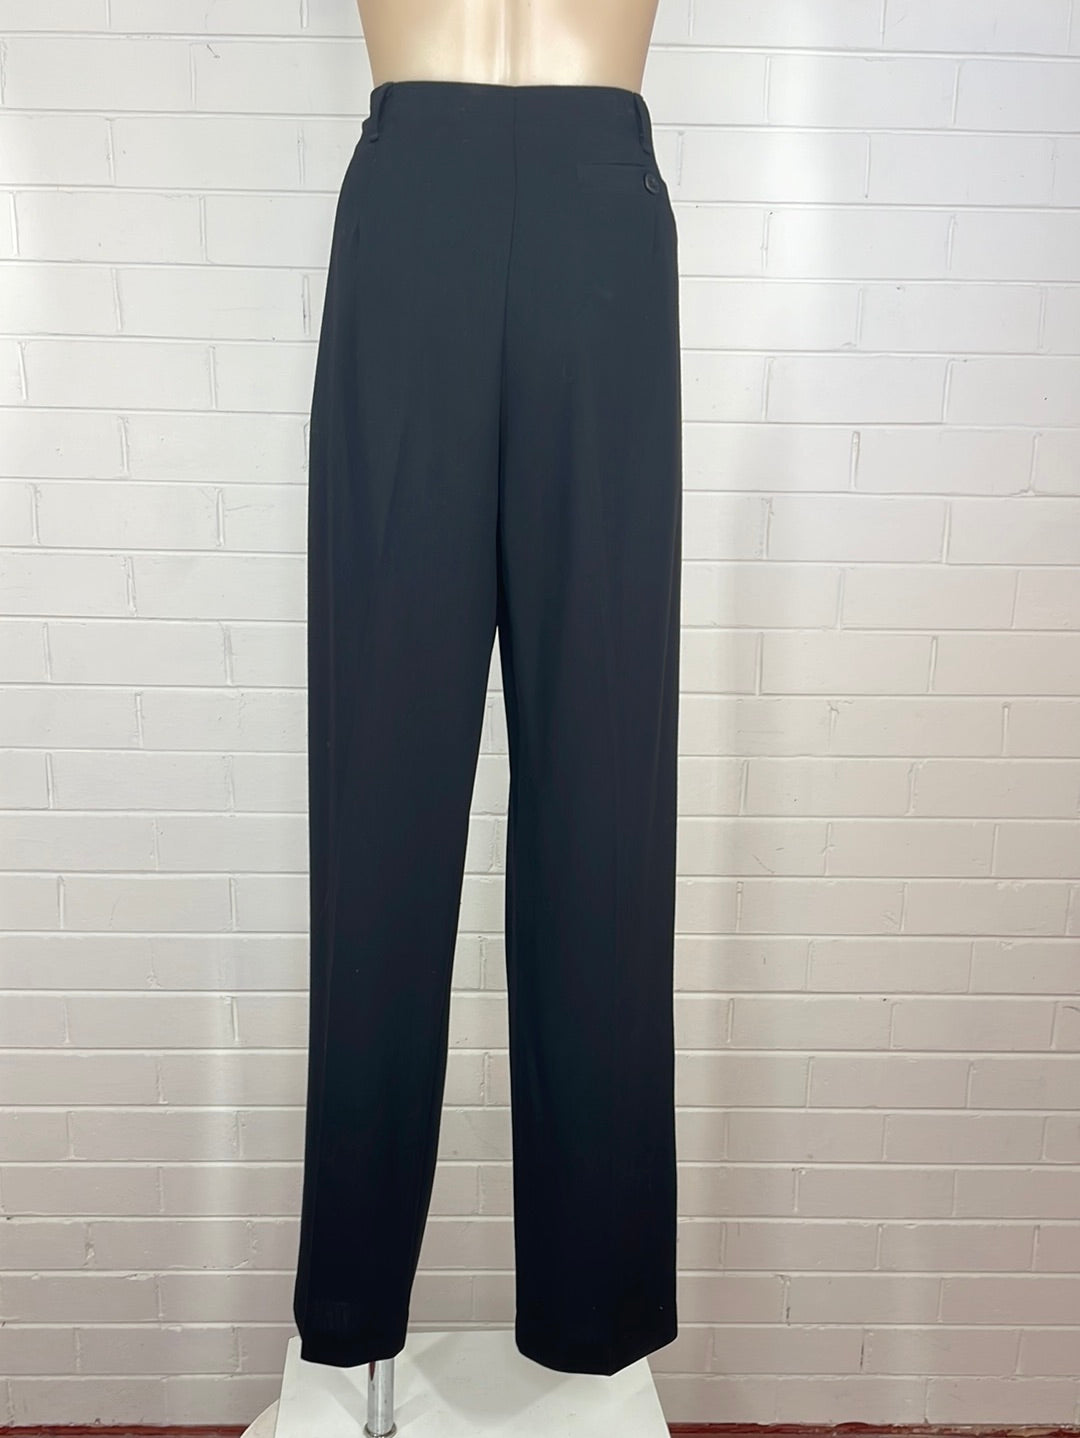 Perri Cutten | pants | size 12 | 100% wool